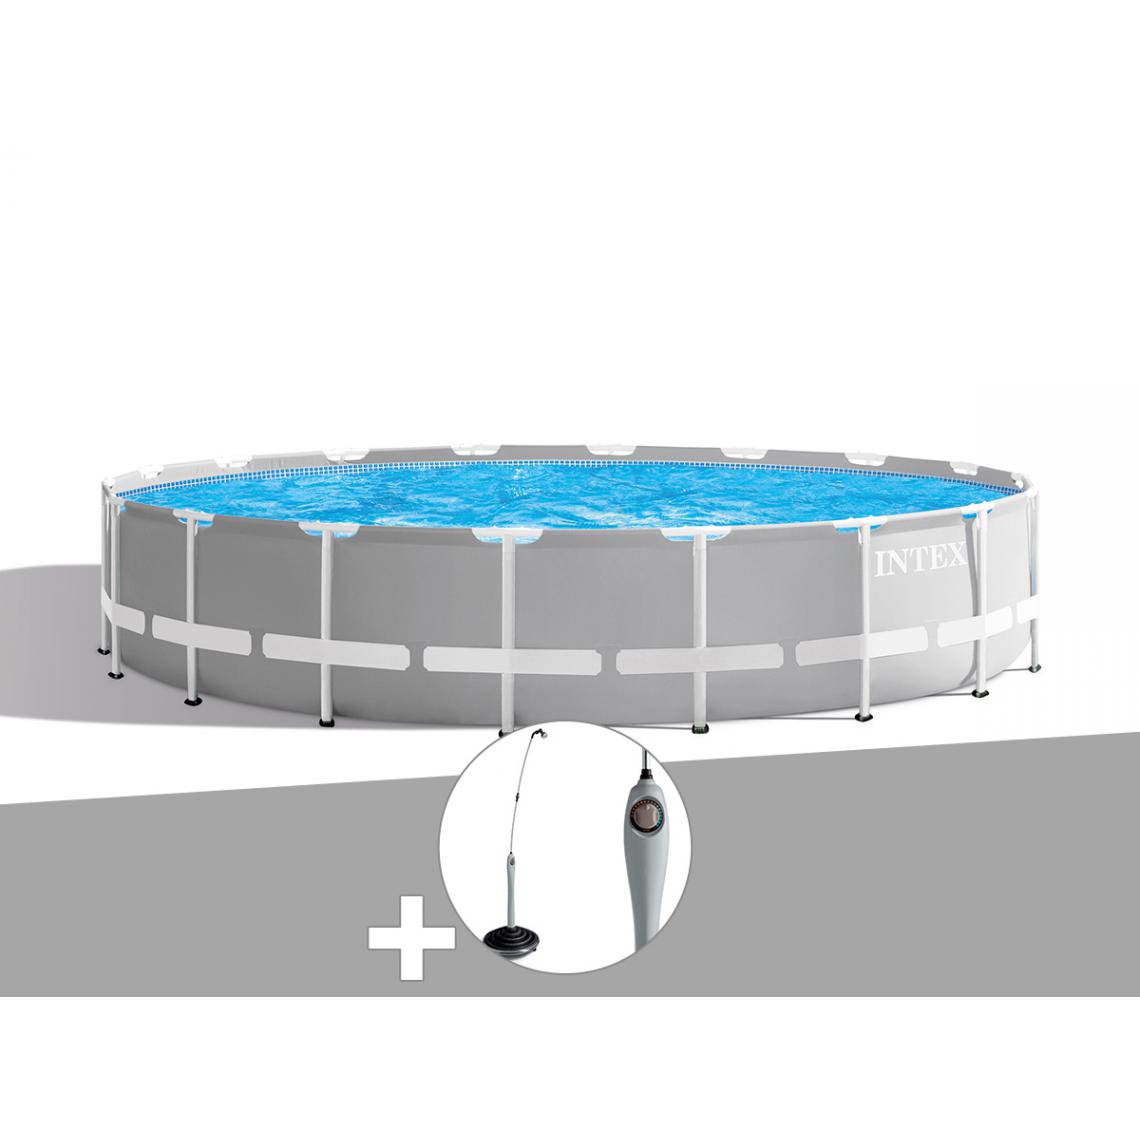 Intex - Kit piscine tubulaire Intex Prism Frame ronde 6,10 x 1,32 m + Douche solaire - Piscine Tubulaire